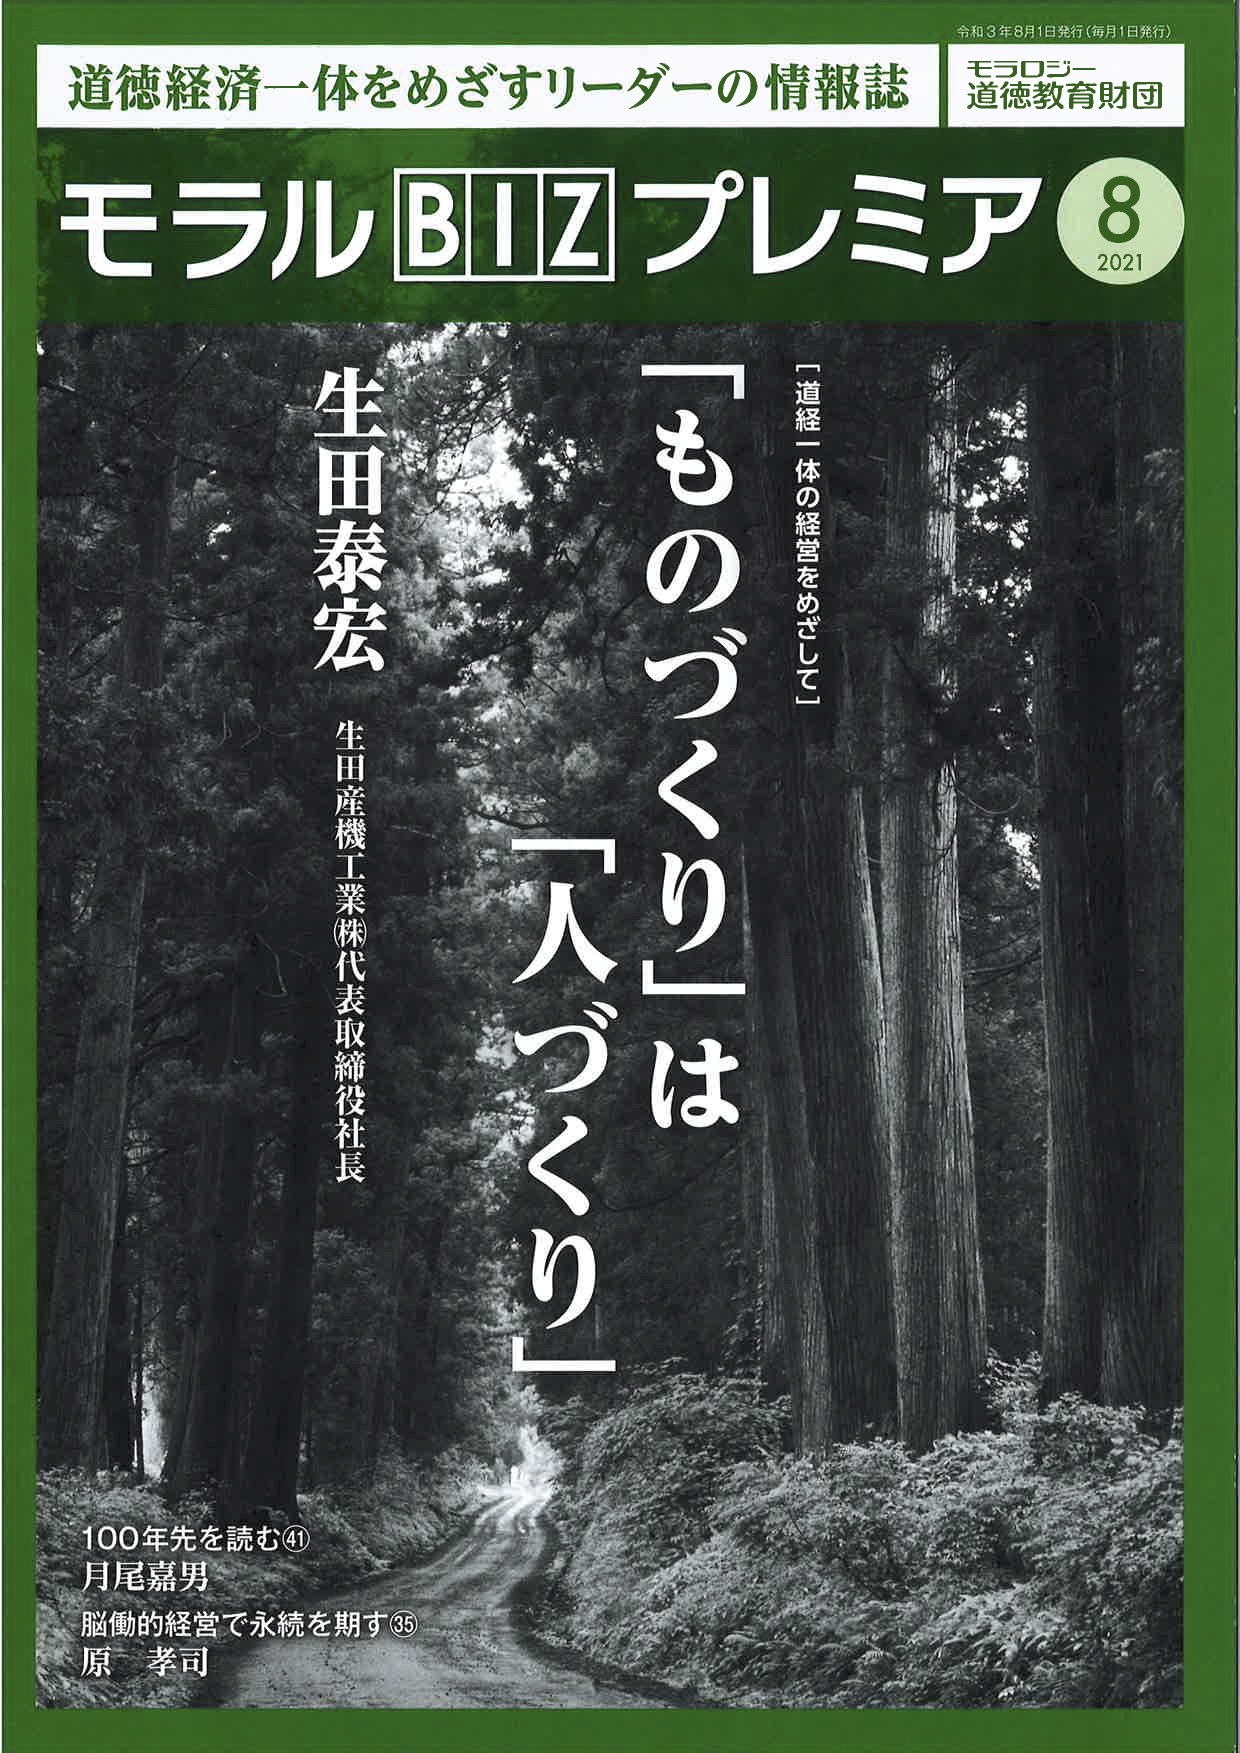 『モラルBIZプレミア』（令和3年8月号）に「『ものづくり』は『人づくり』」 と題して生田社長の記事が掲載されました。